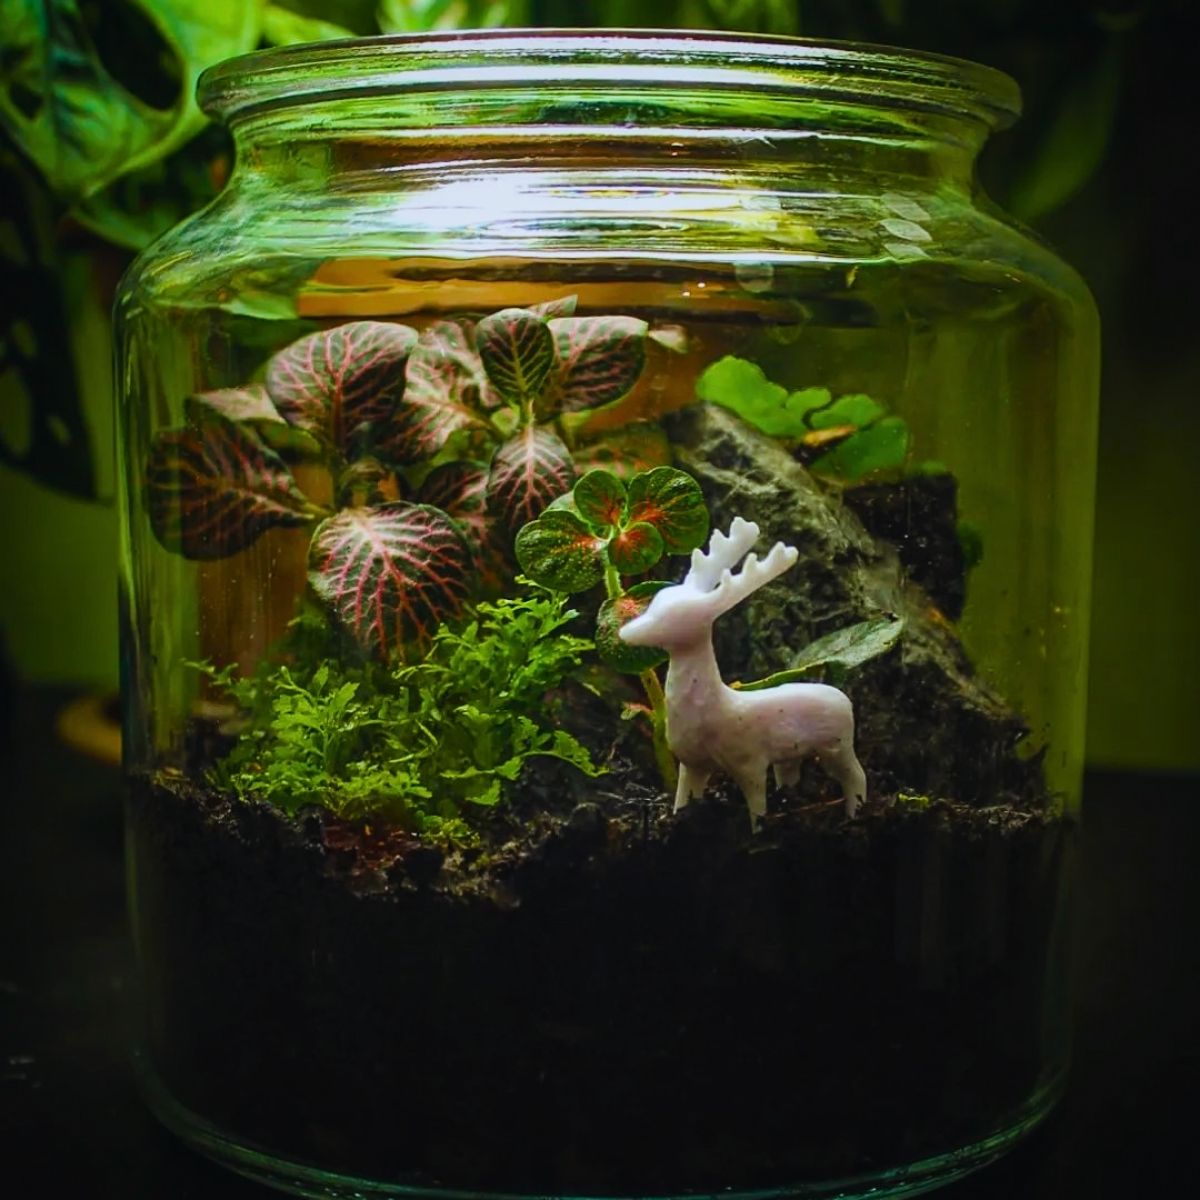 Nerve Plant in a glass jar terrarium